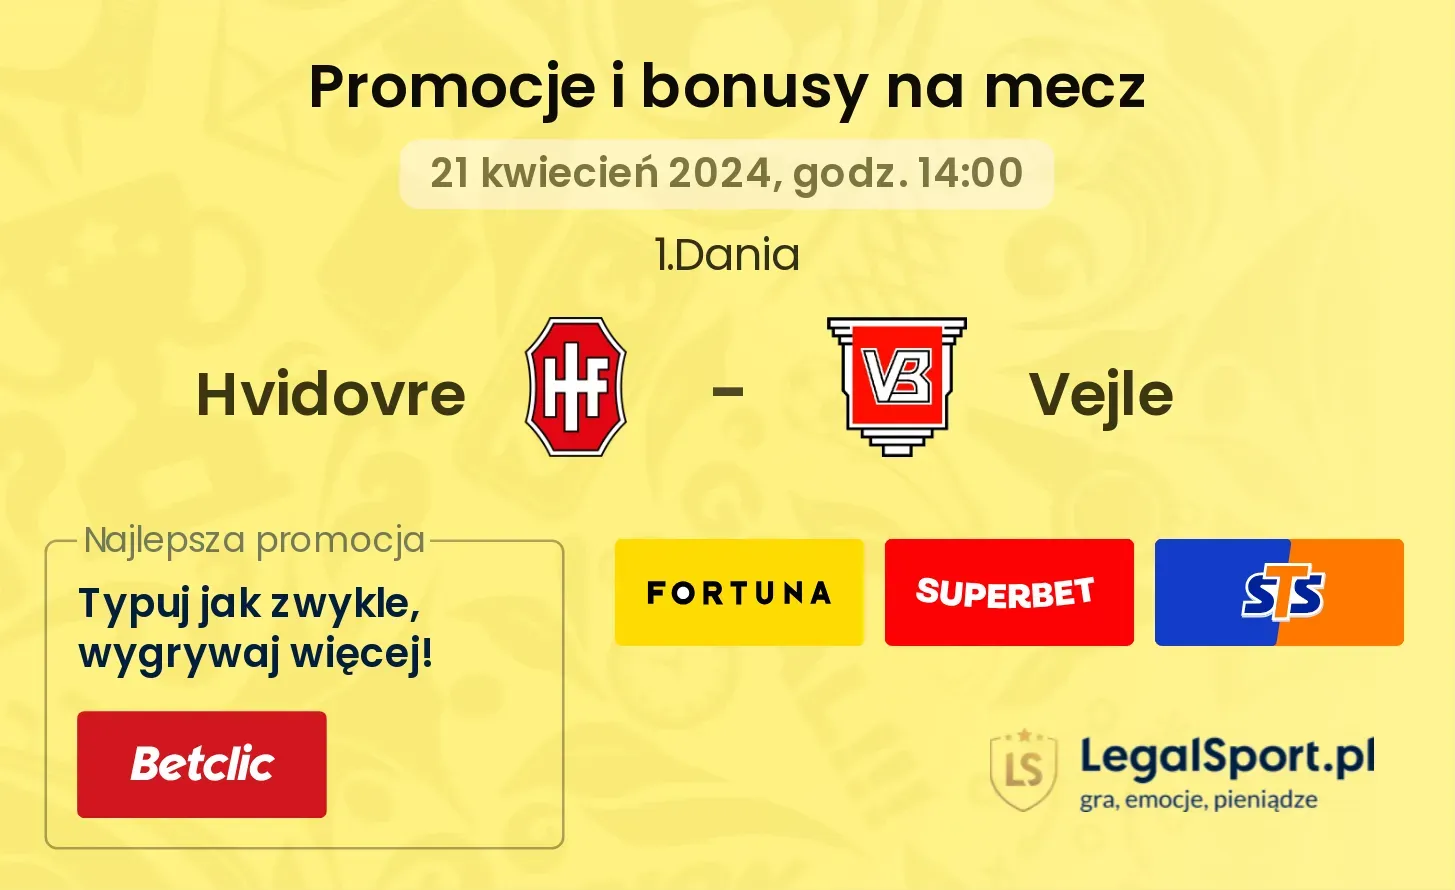 Hvidovre - Vejle promocje bonusy na mecz